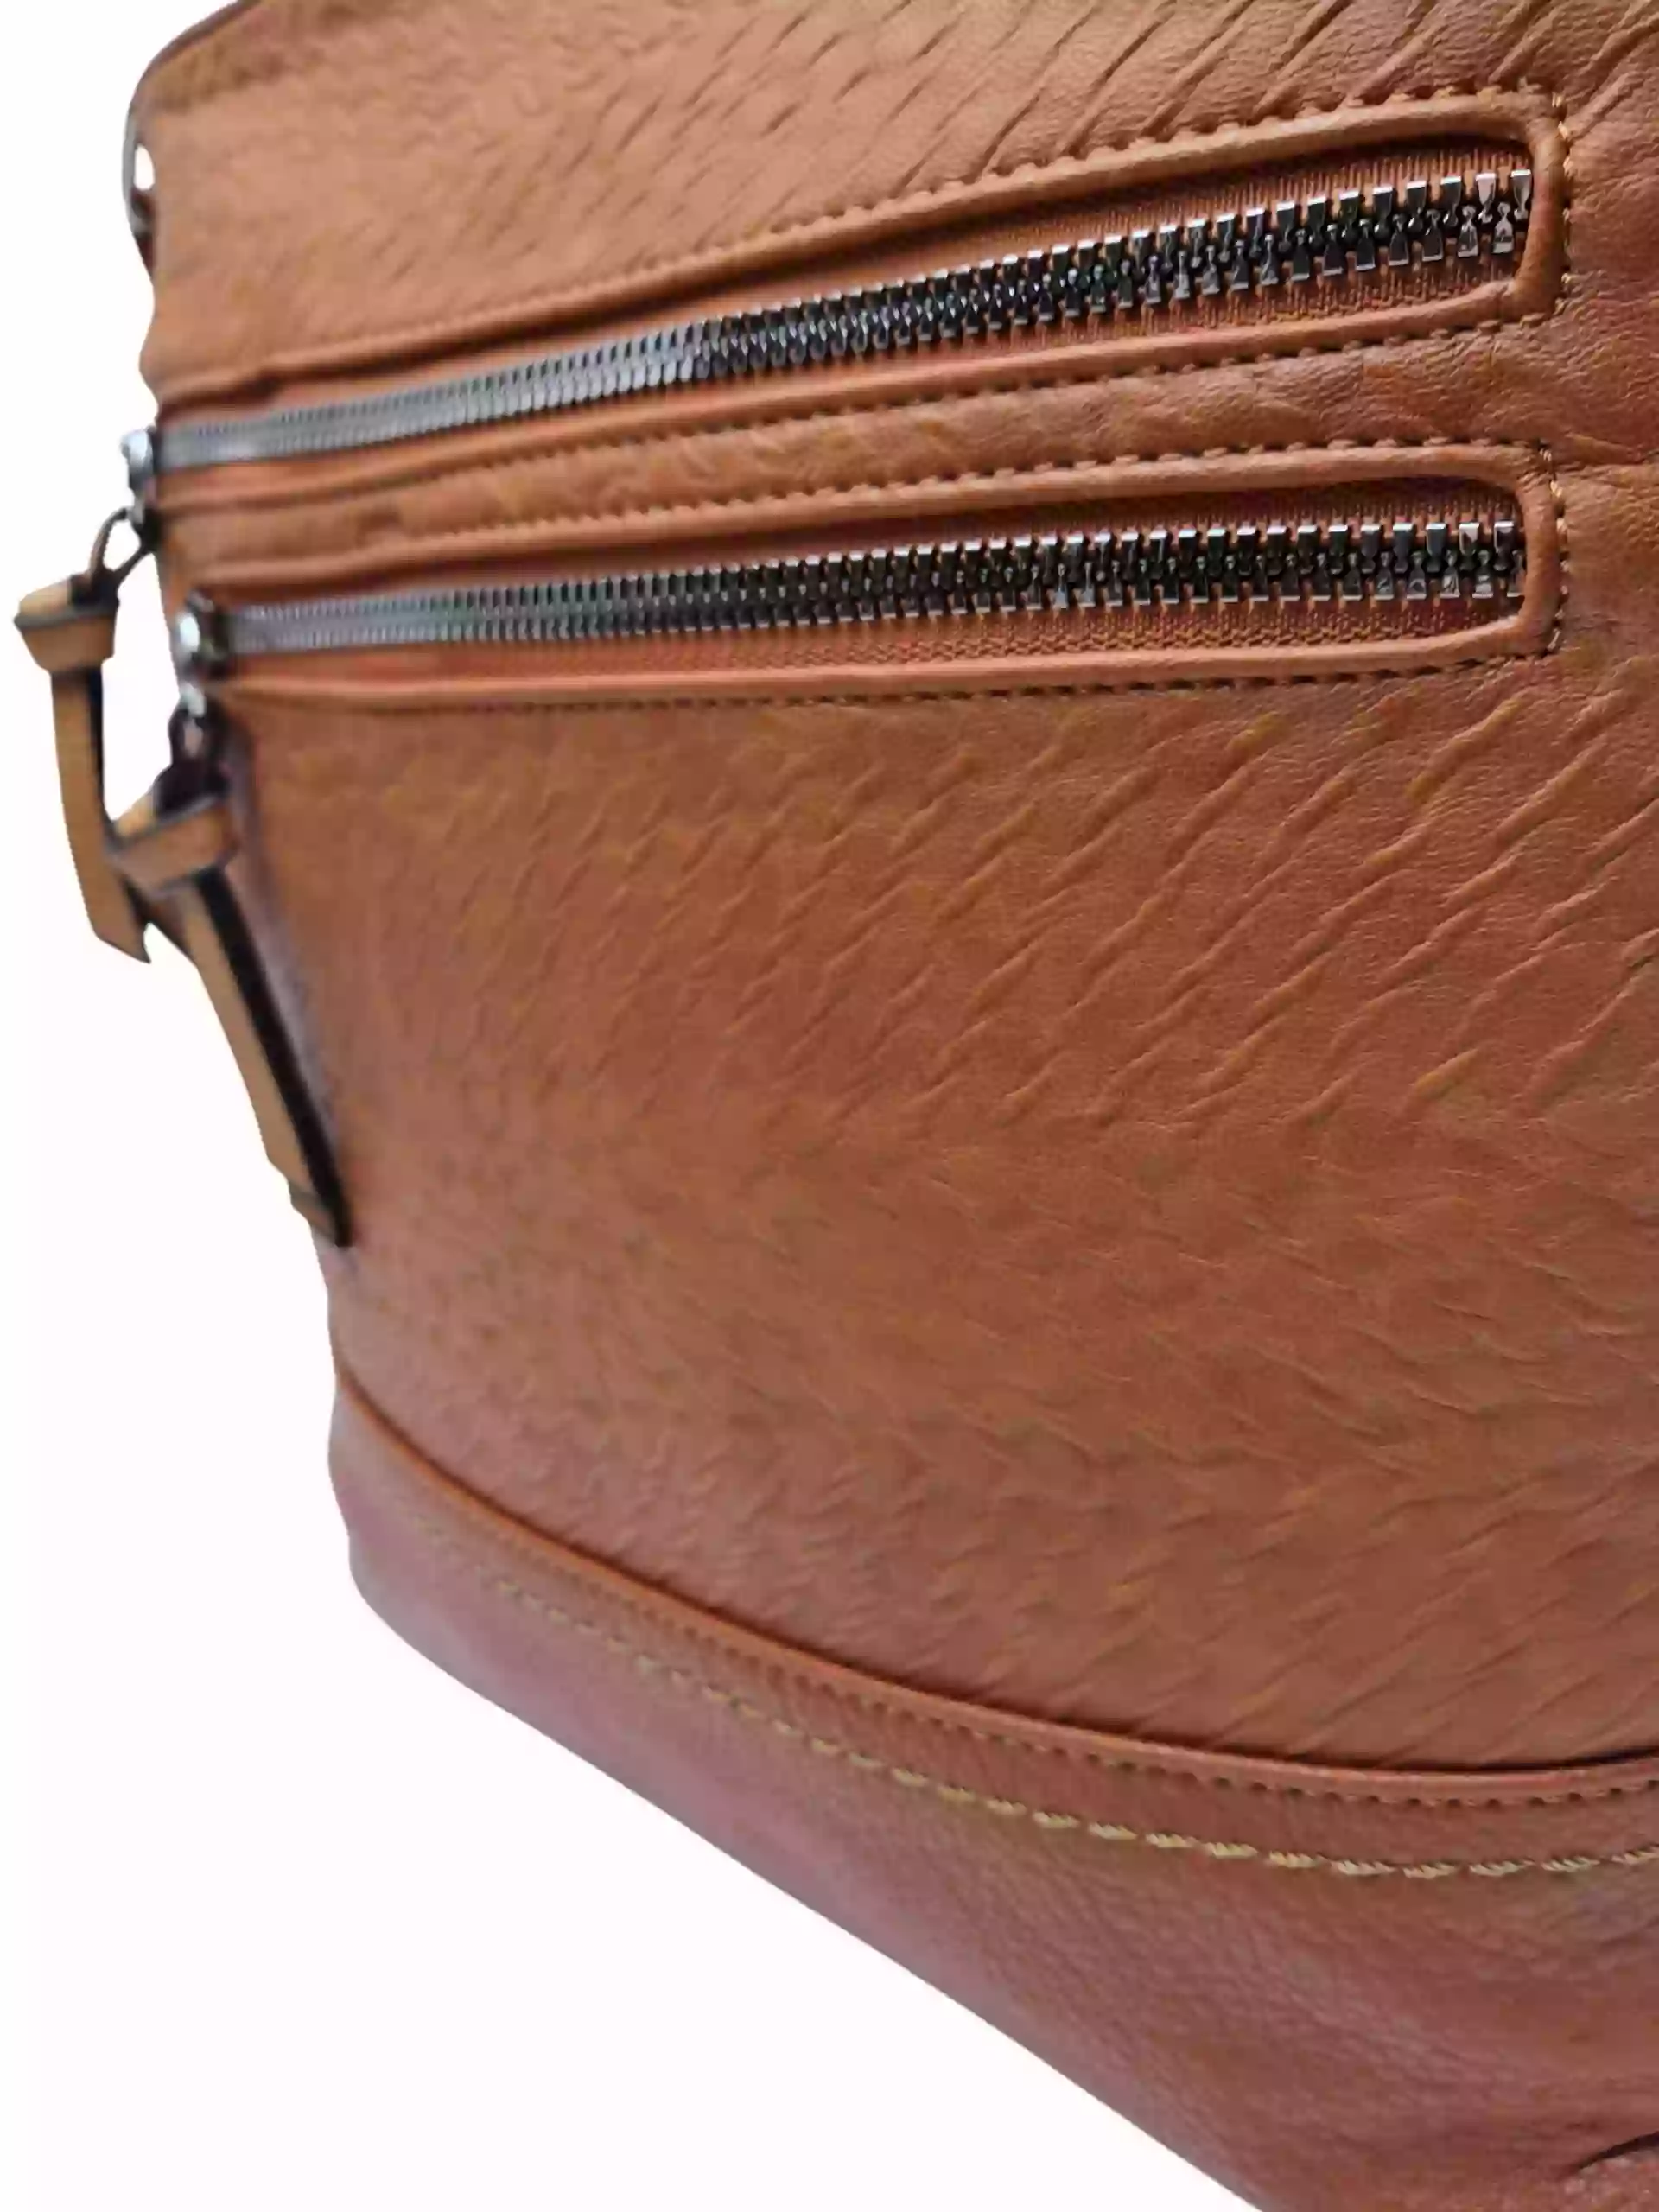 Středně hnědá crossbody kabelka s moderní texturou, Tapple, H20434, detail crossbody kabelky